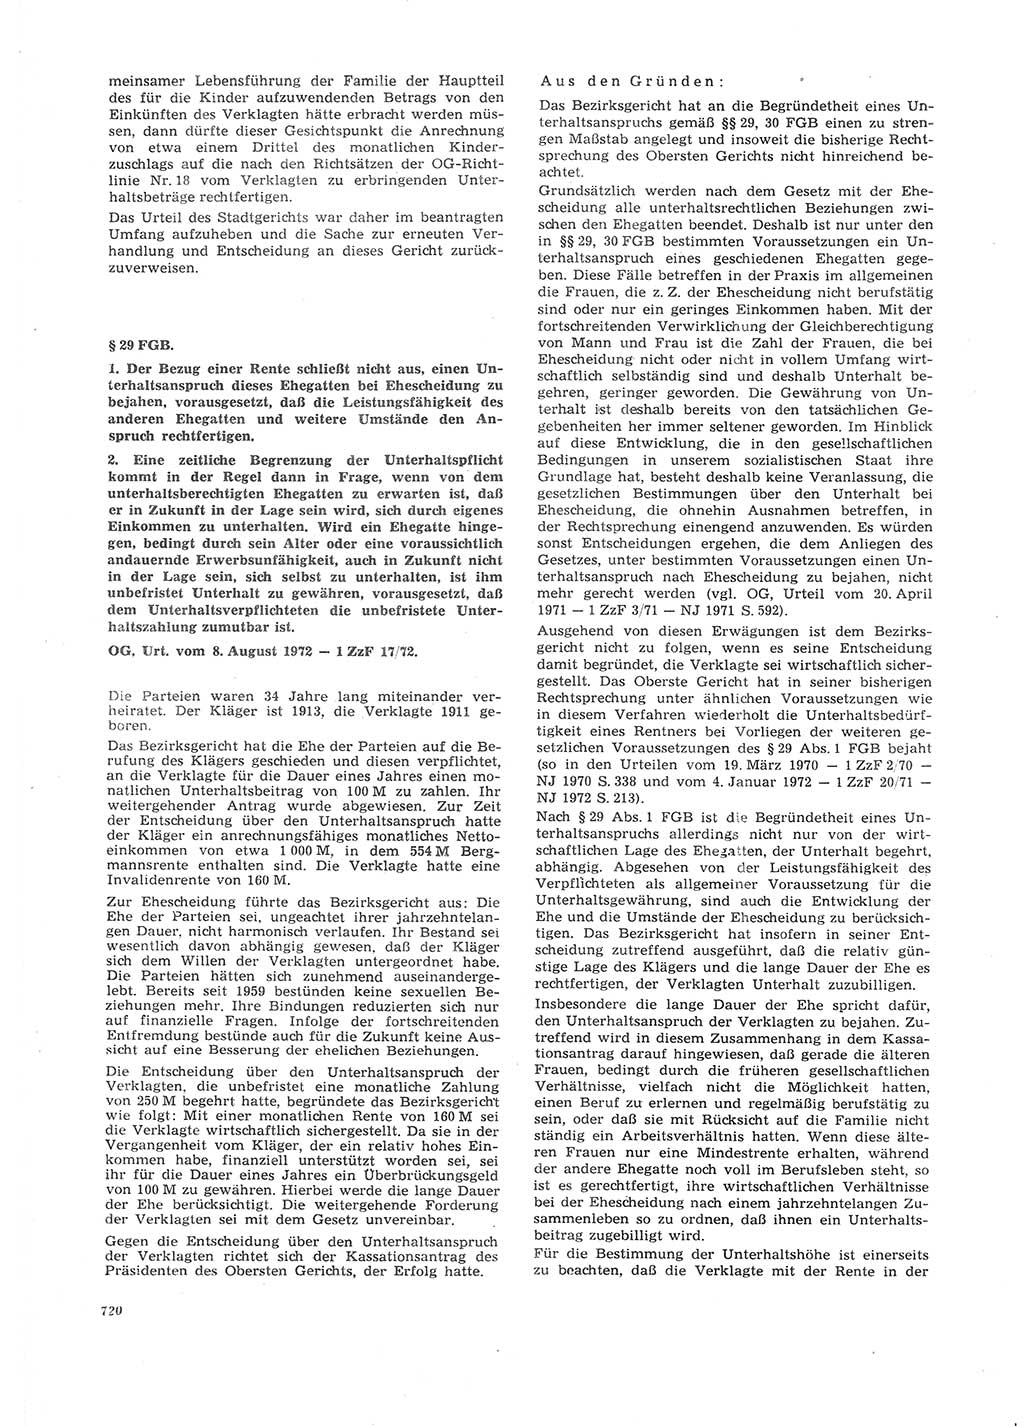 Neue Justiz (NJ), Zeitschrift für Recht und Rechtswissenschaft [Deutsche Demokratische Republik (DDR)], 26. Jahrgang 1972, Seite 720 (NJ DDR 1972, S. 720)